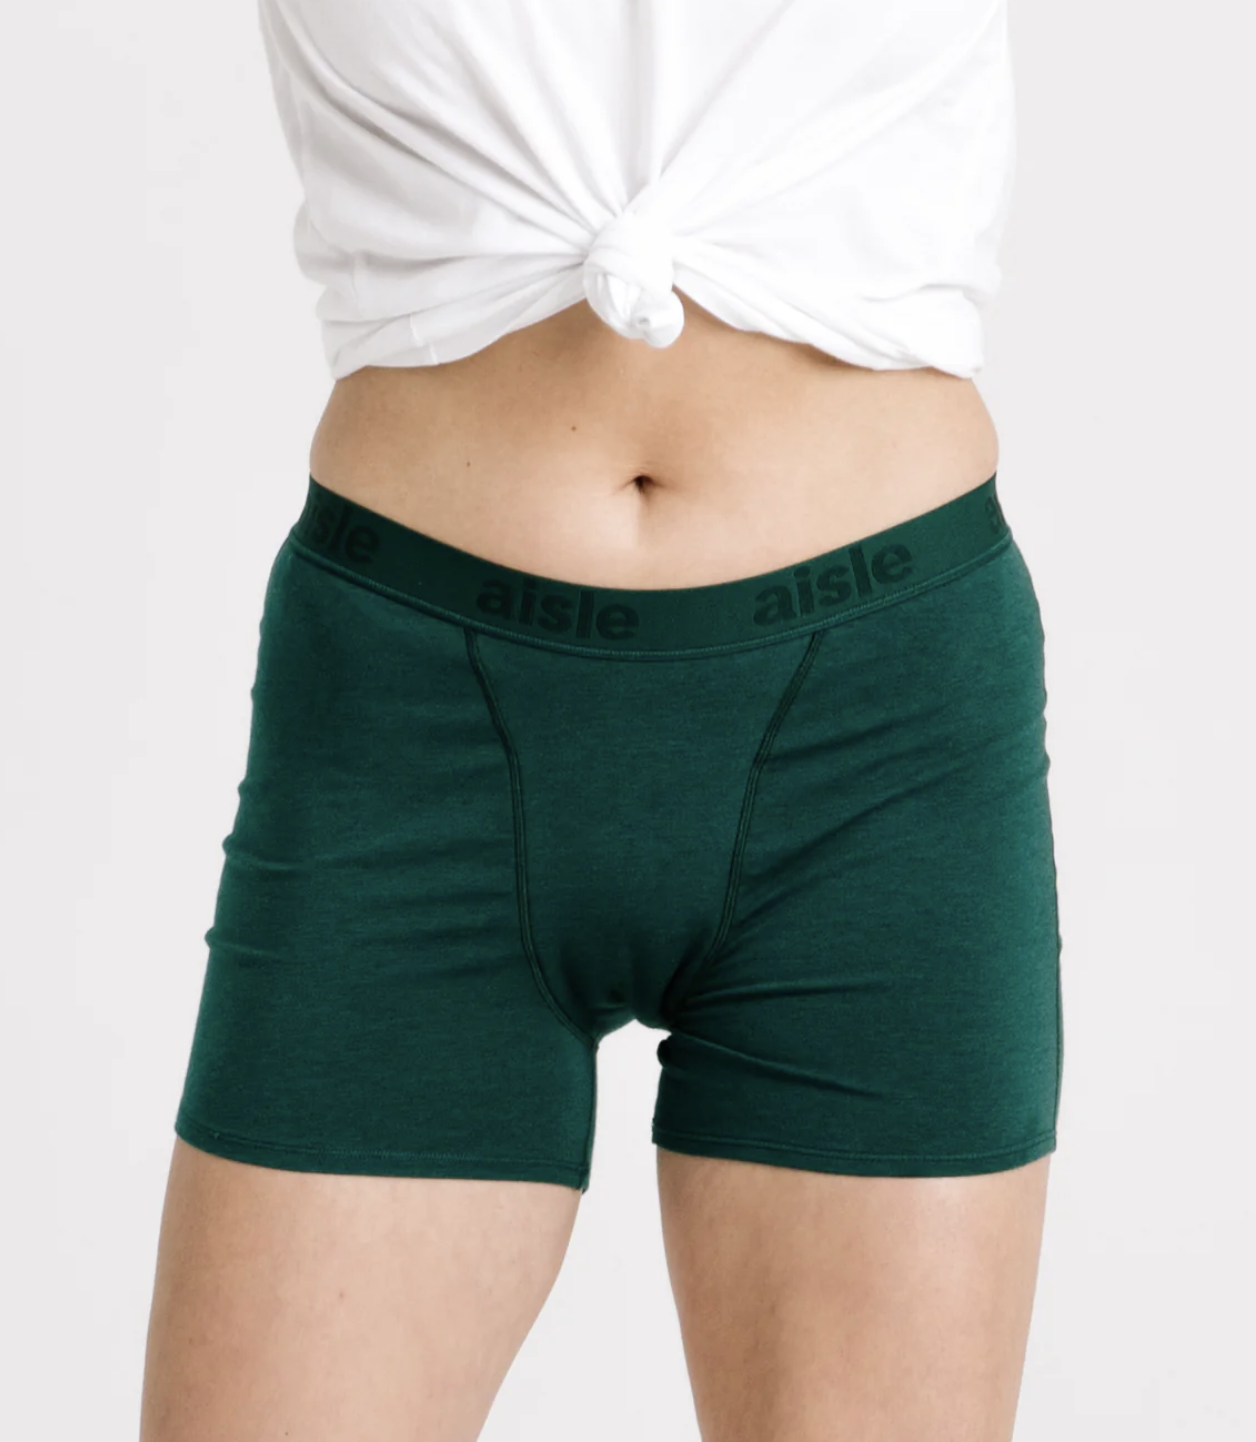 Aisle Leakproof Period Underwear - Brief Style